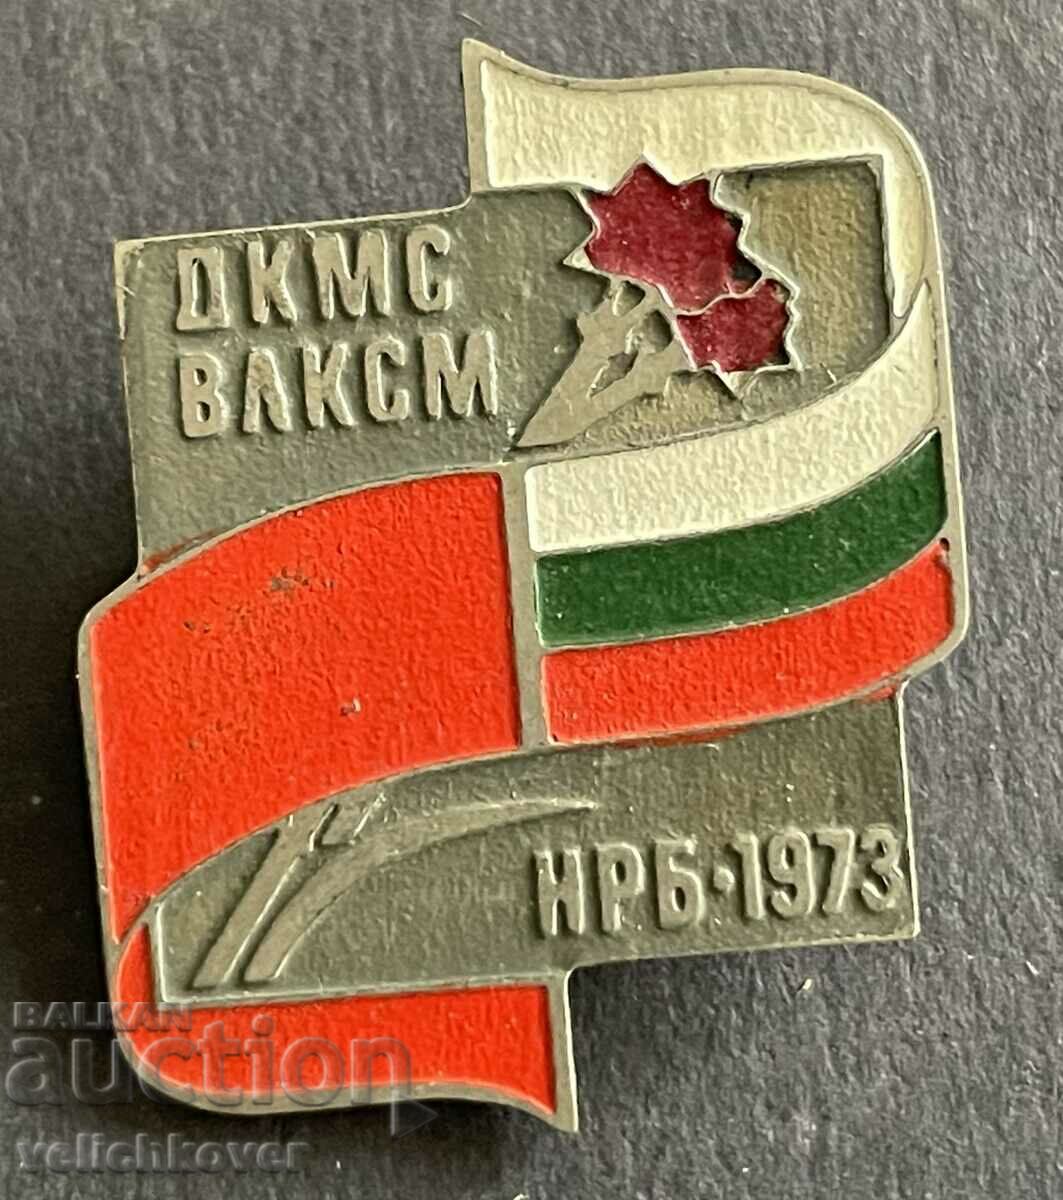 37652 Bulgaria URSS întâlnește DKMS și VLKSM întâlnește Komsomol 1973